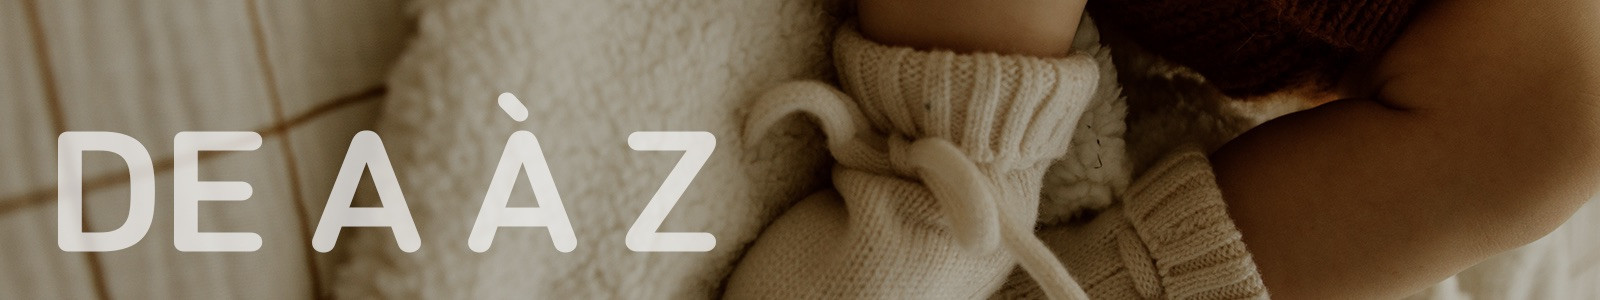 Chaussons bébé personnalisables | Atelier Wagram